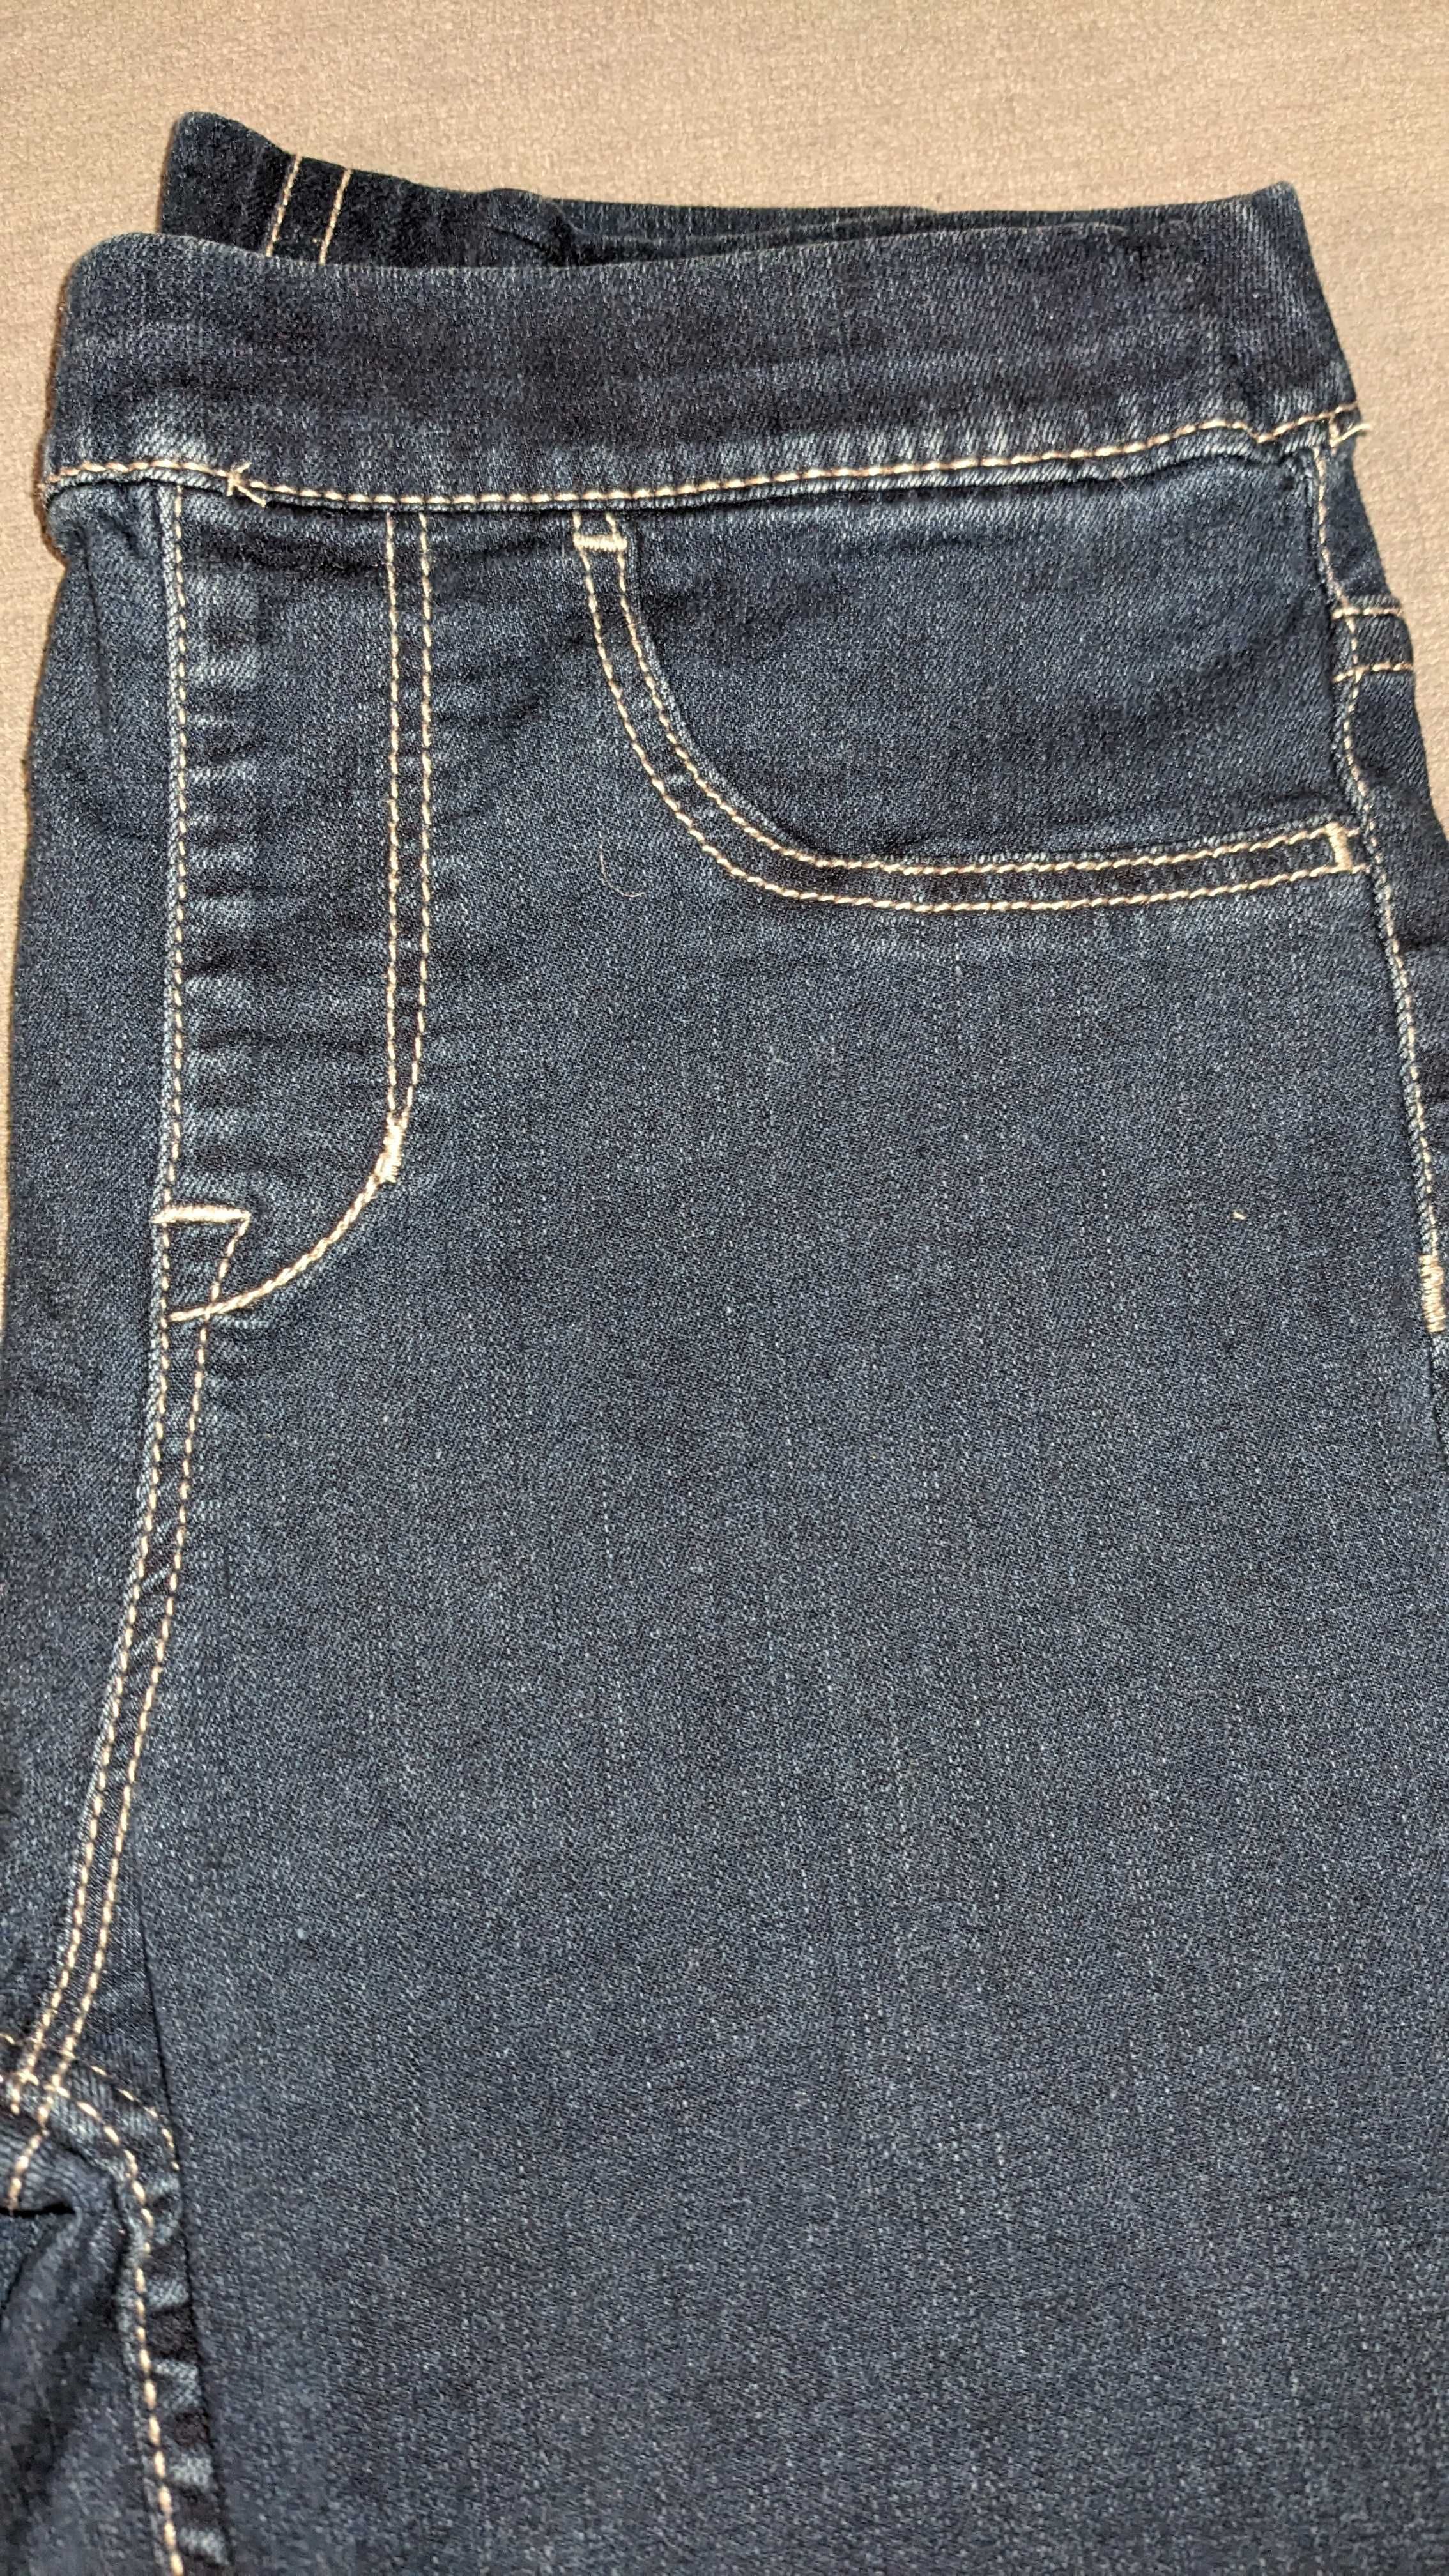 Dziewczęce jeansowe leggins - Leginsy Denim r 134 9 lat okazja